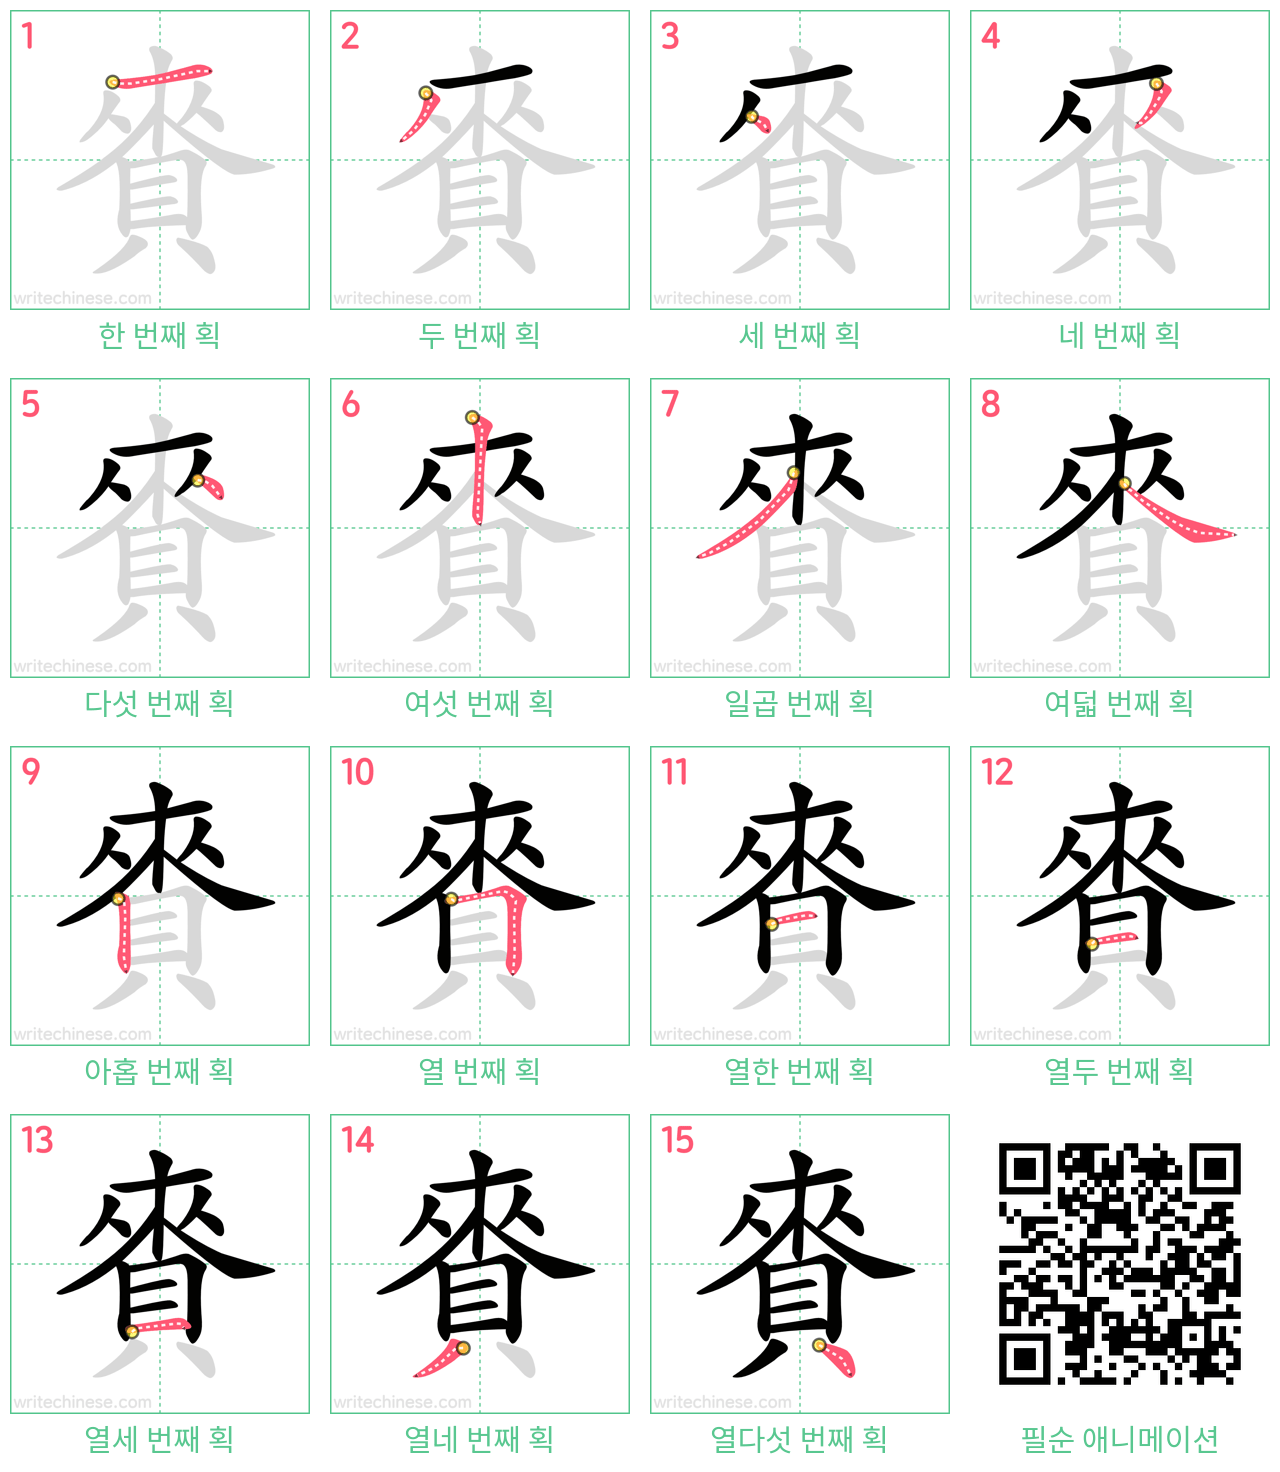 賚 step-by-step stroke order diagrams